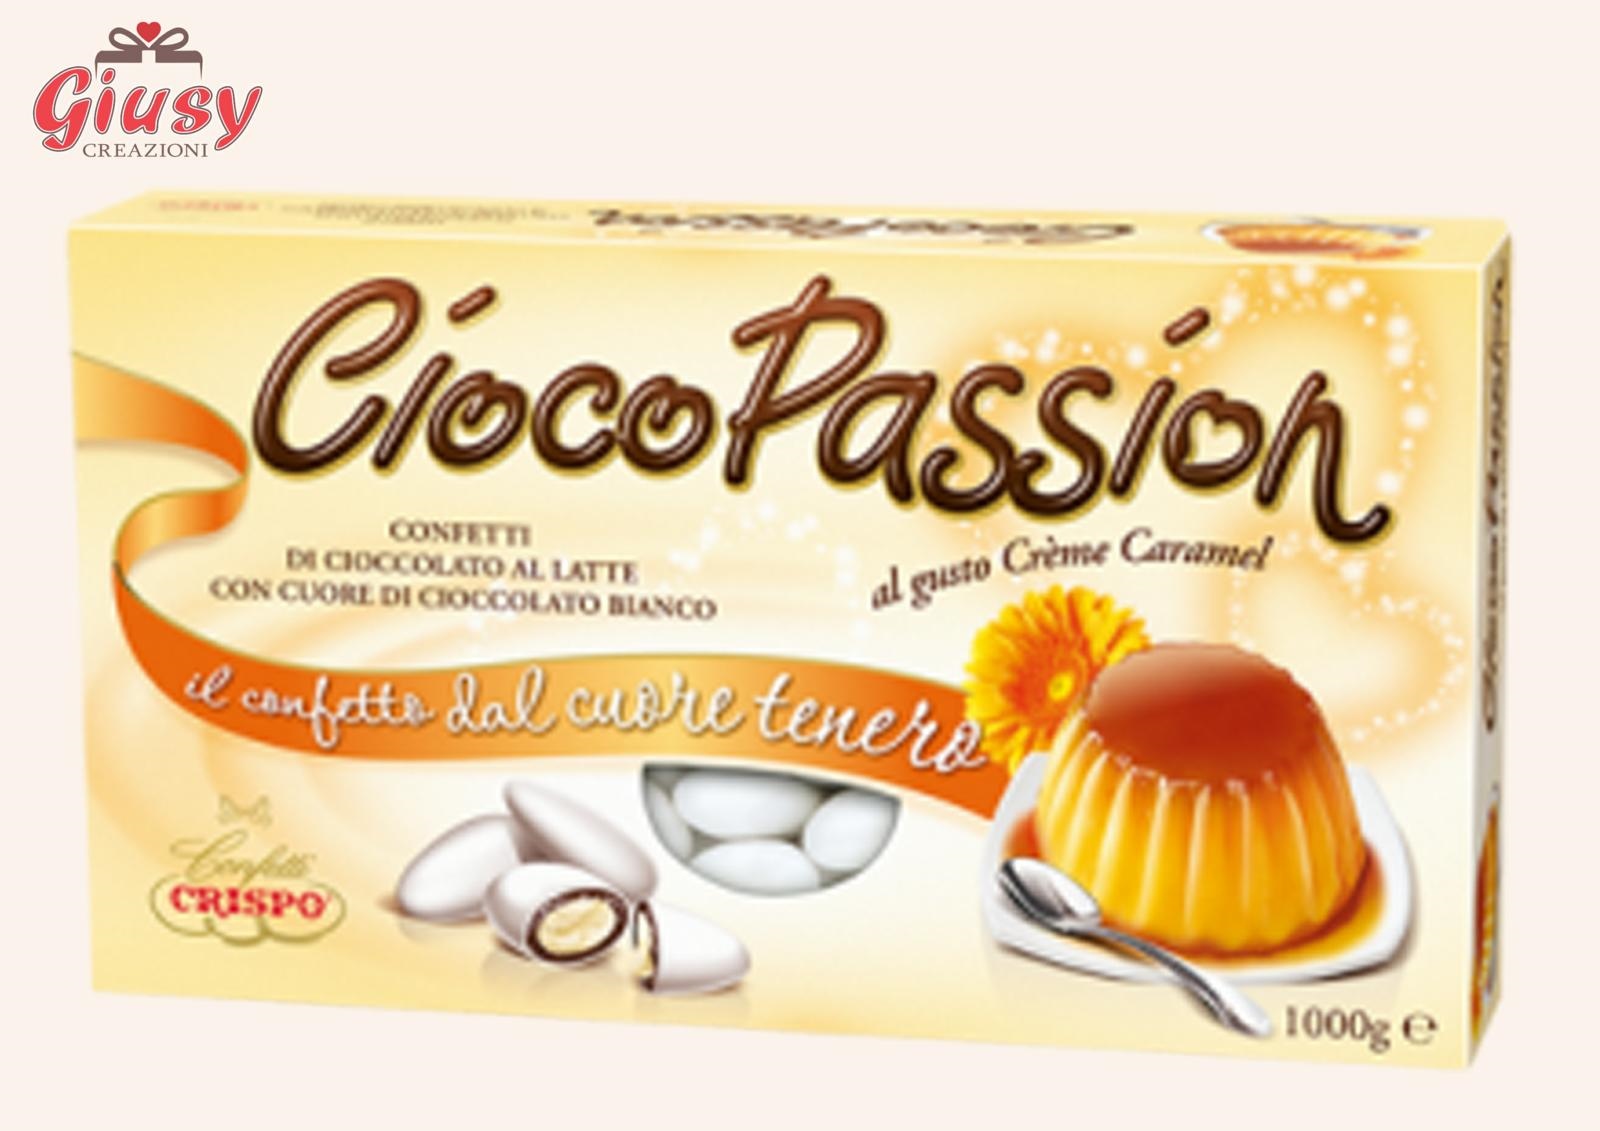 Confetti CiocoPassion Confezione 1Kg Gusto Creme Caramel